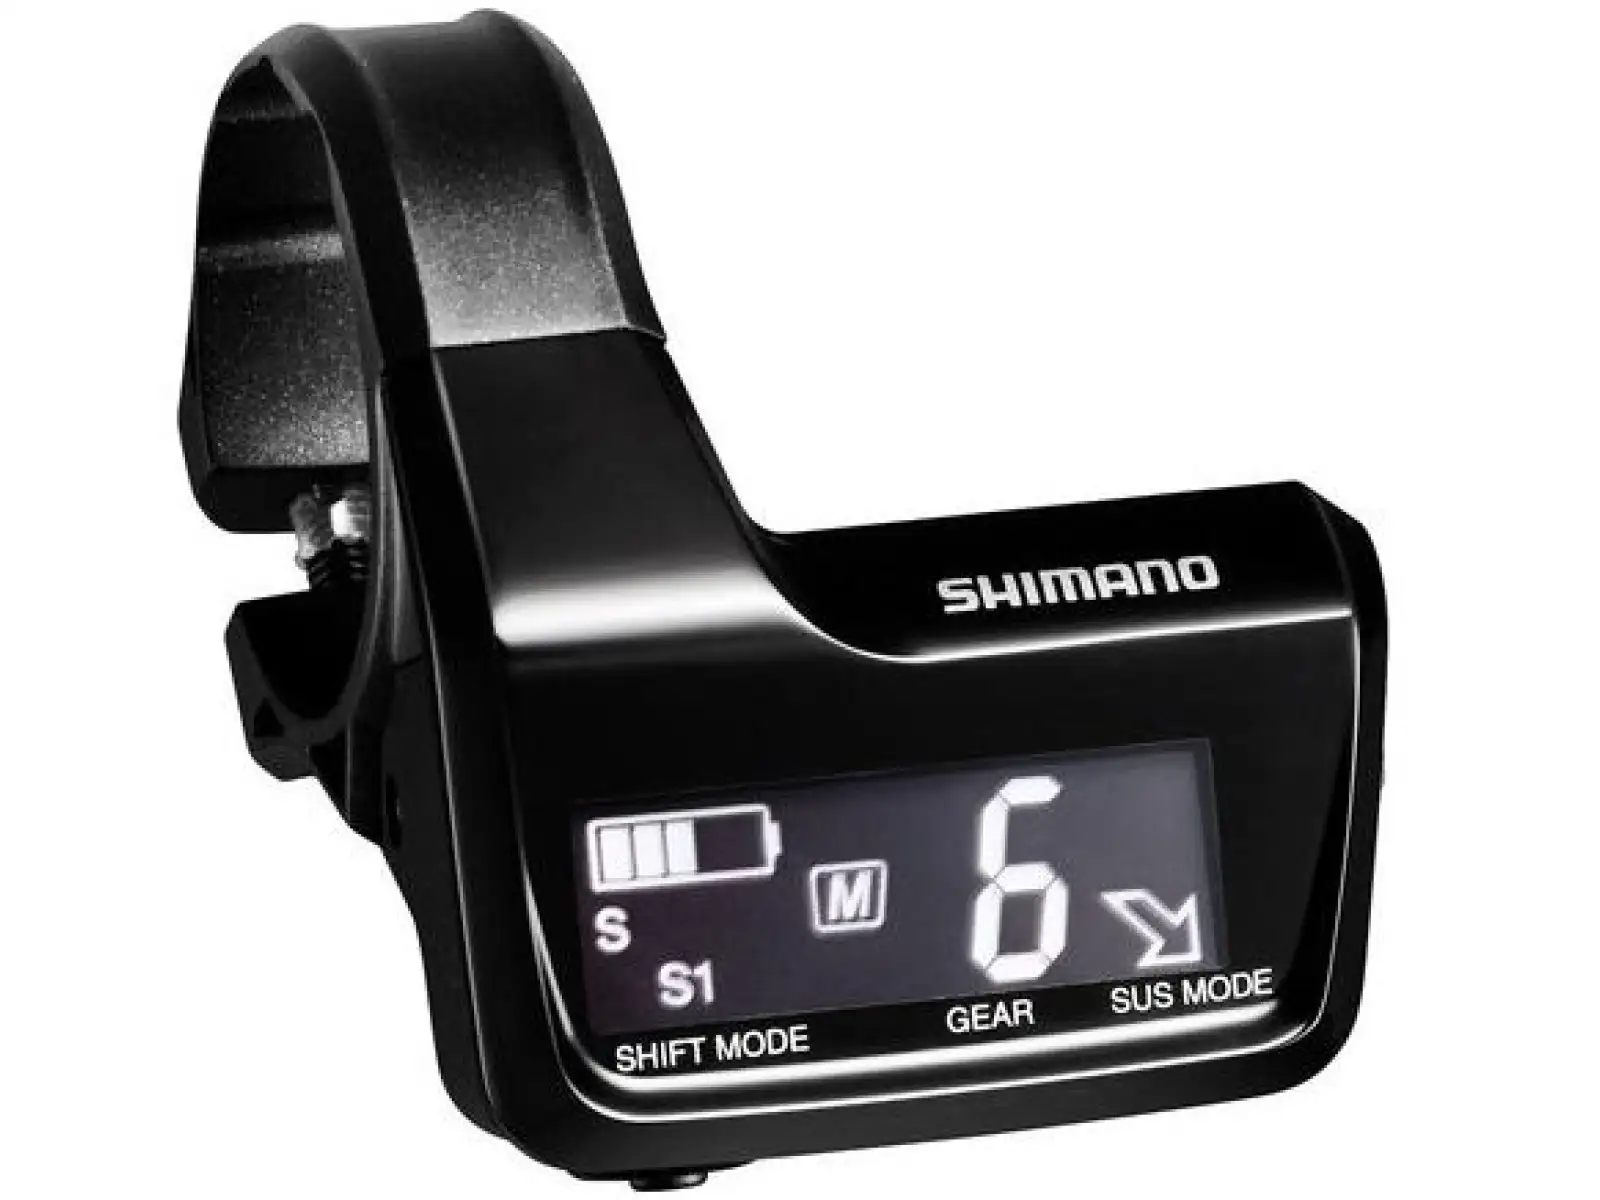 Informačný displej Shimano XT SC-MT800 Di2